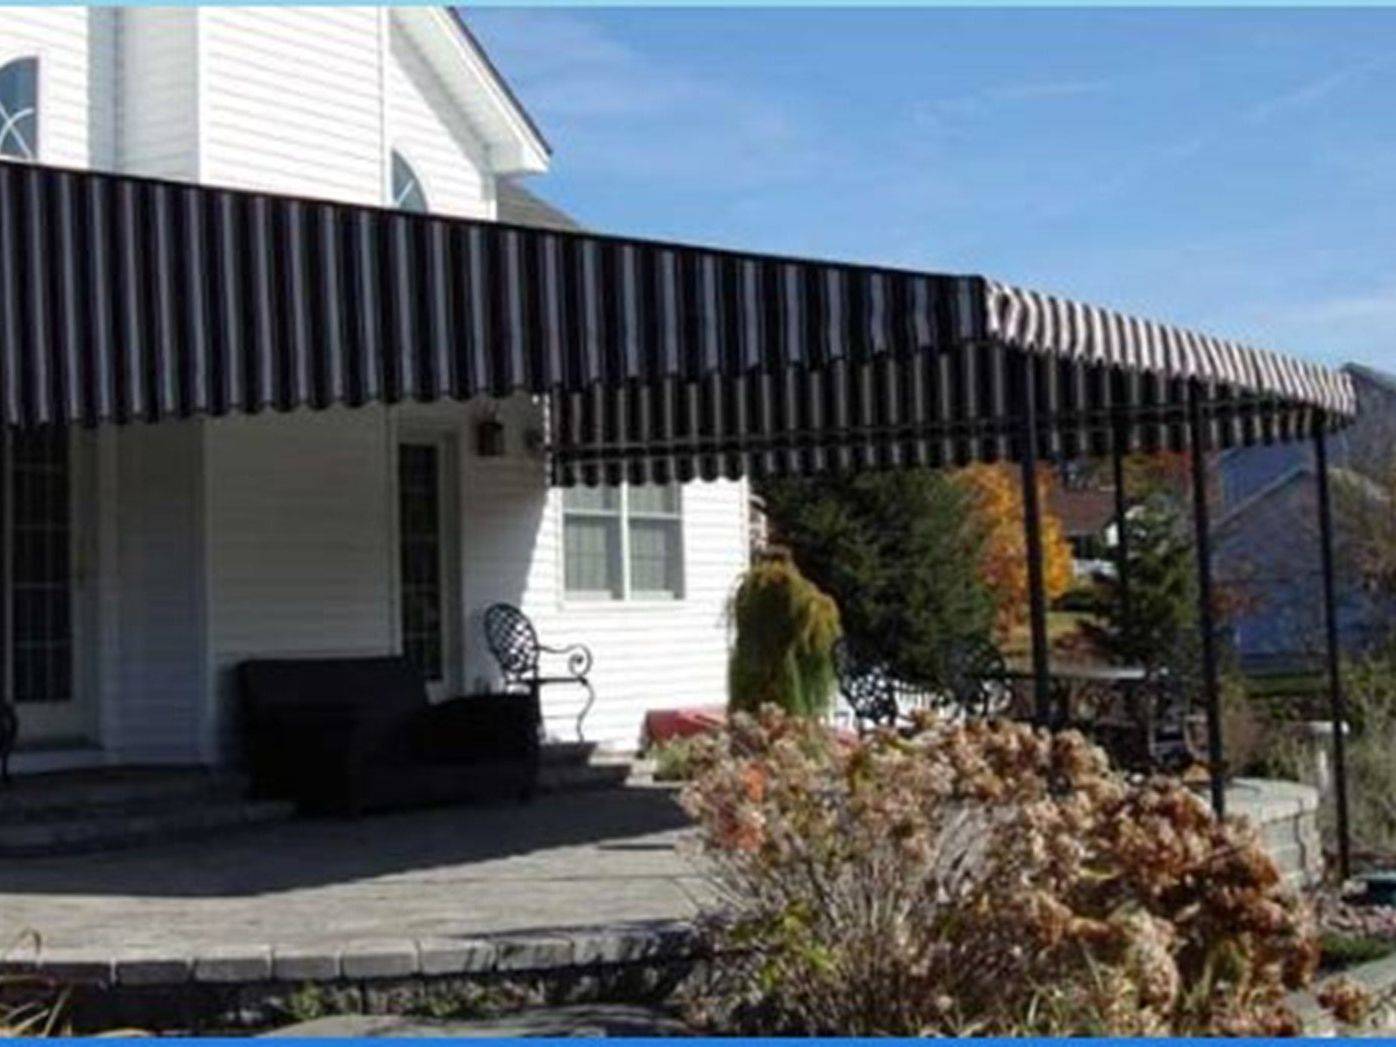 Stationary Residential Awning - Glen Gardner, NJ - Canopy Erectors, Inc